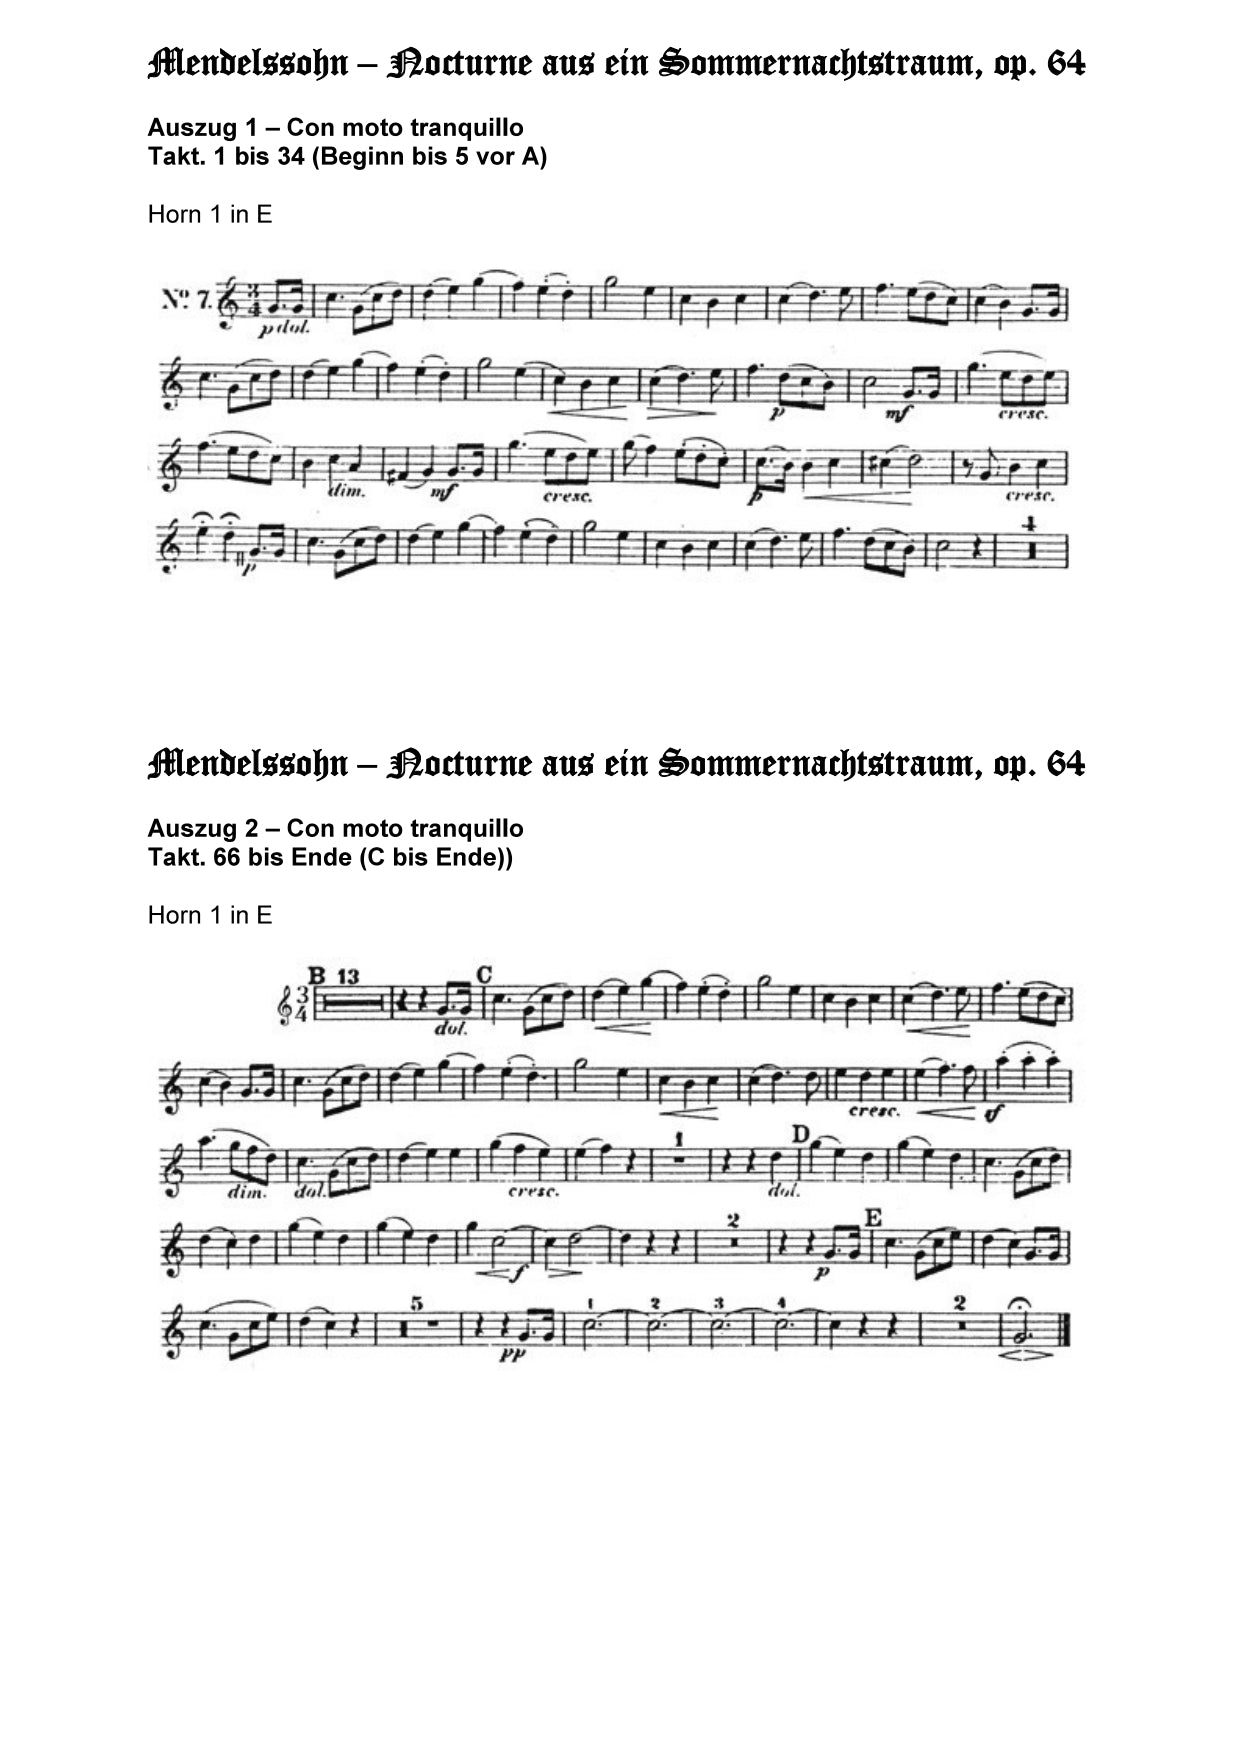 Orchester Studie - Felix Mendelssohn Bartholdy - ein Sommernachtstraum - Horn 1